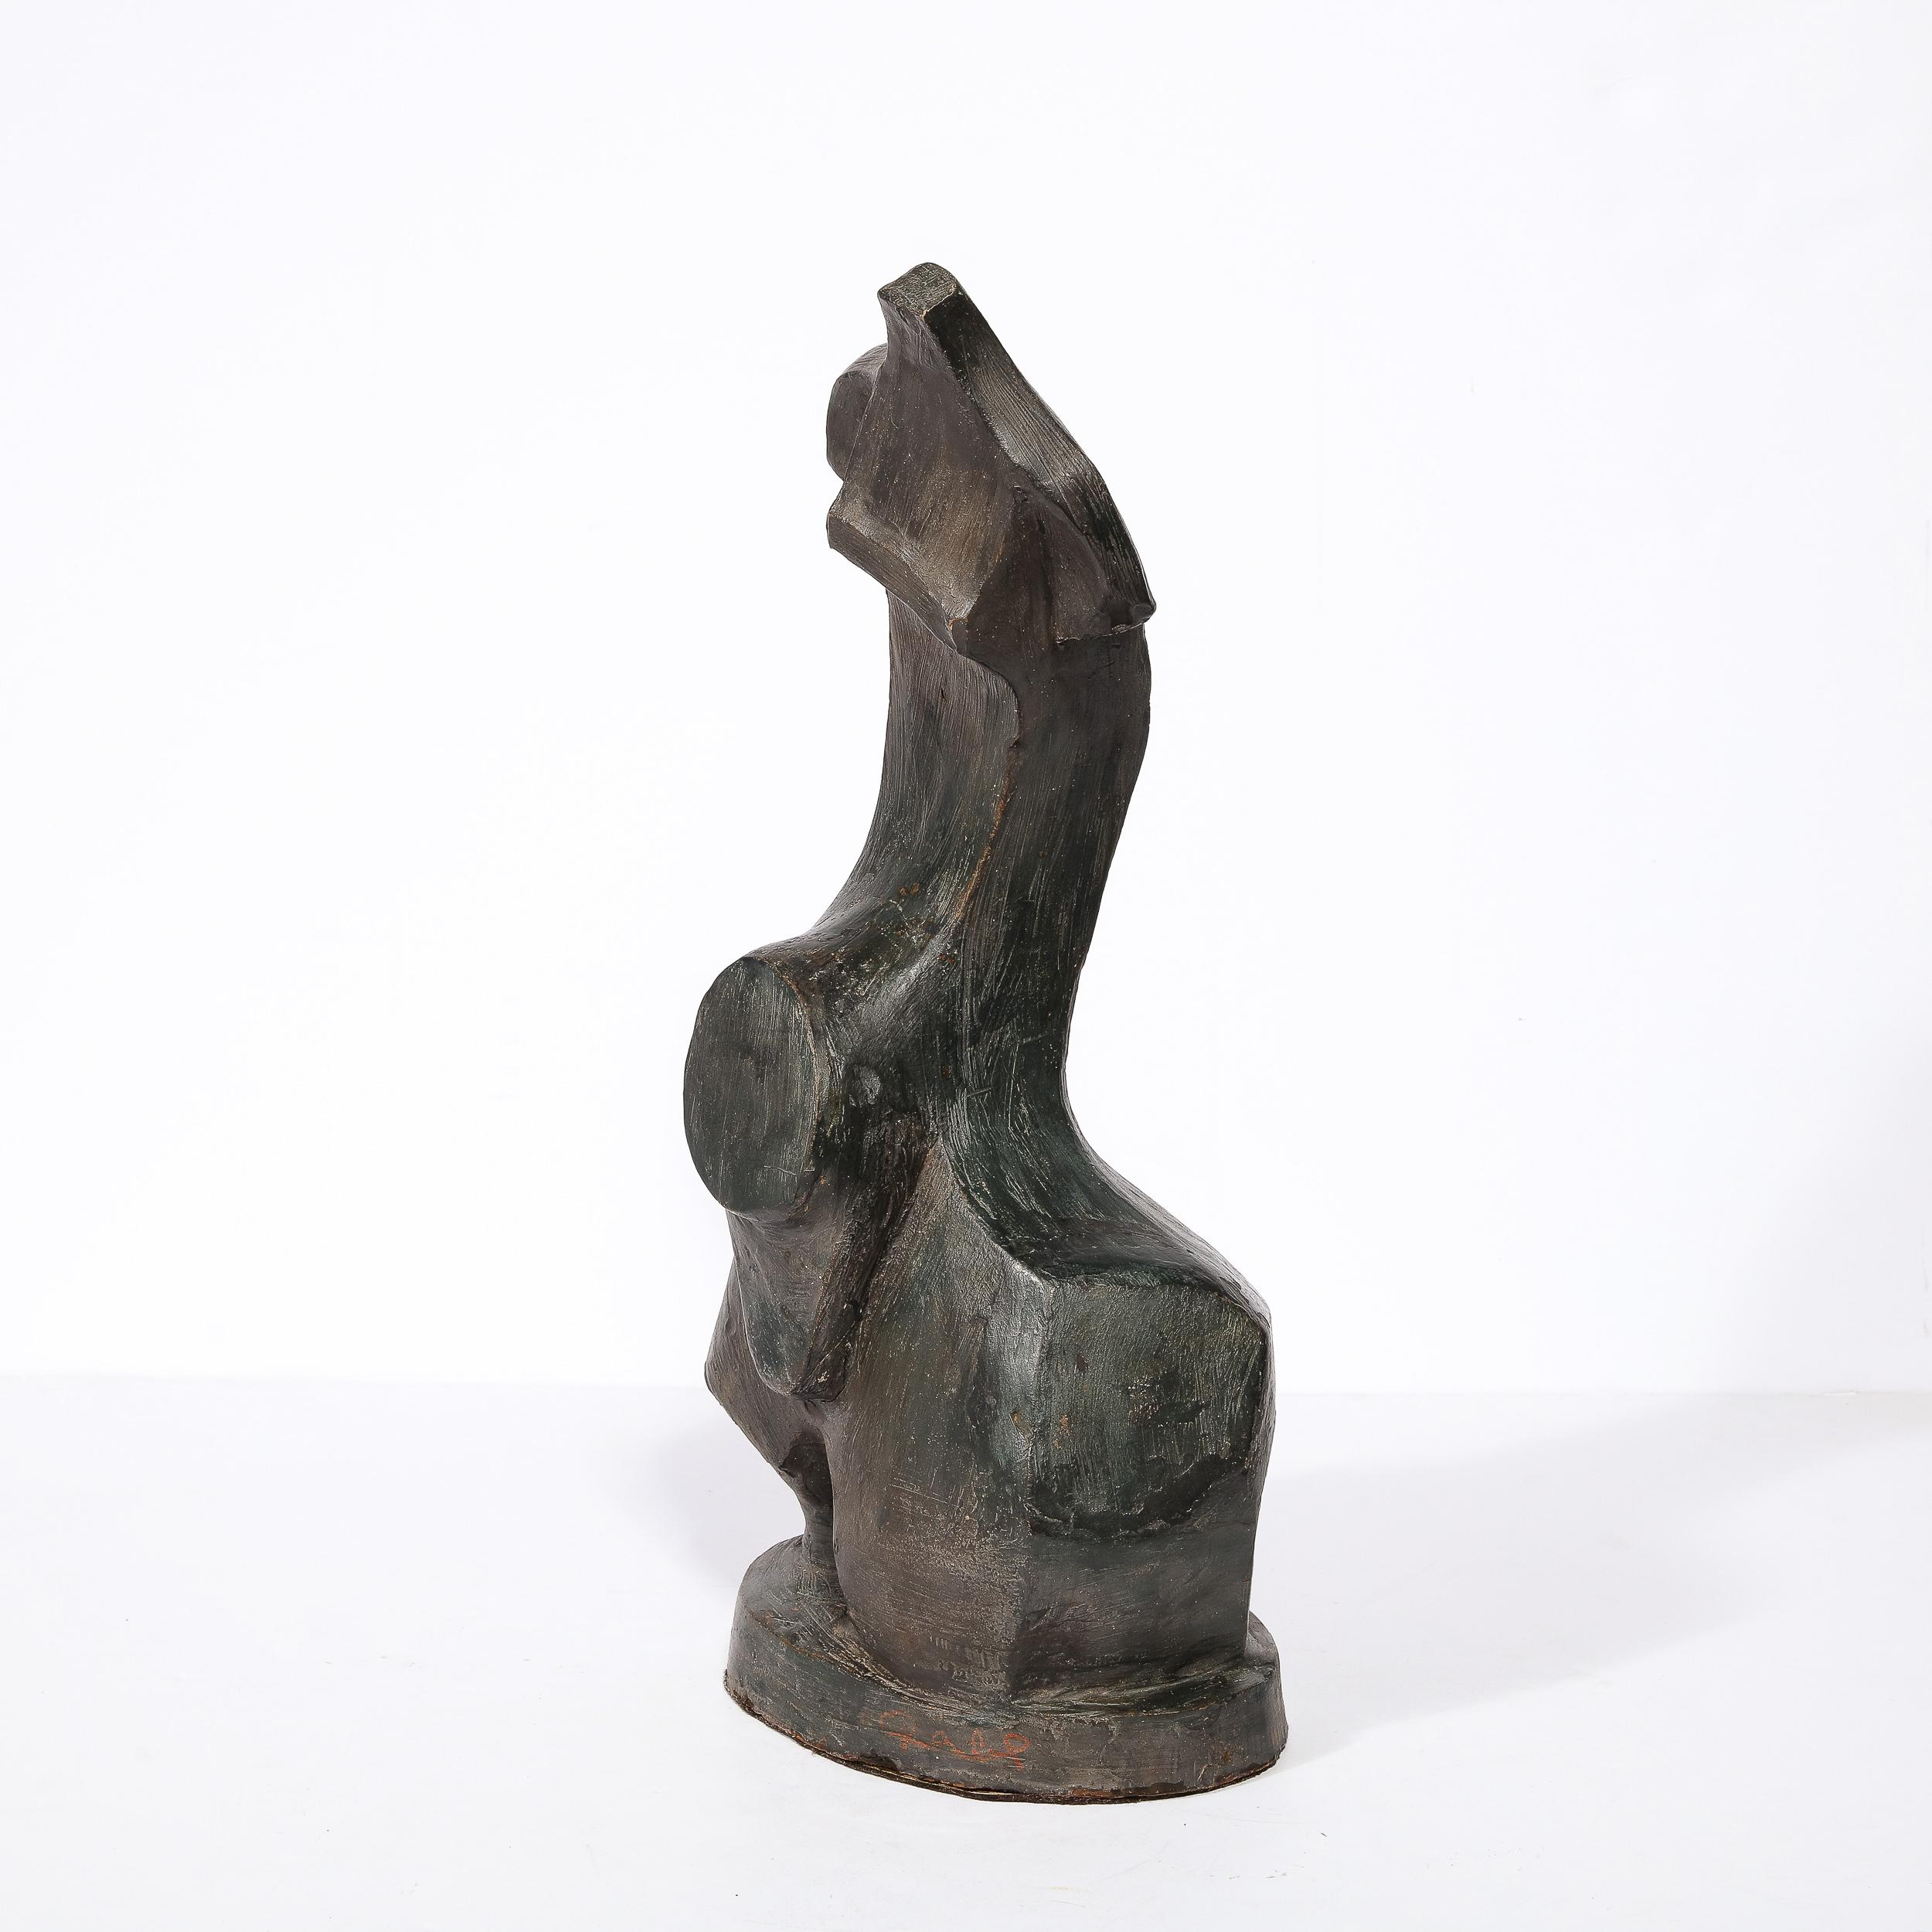 Cette sculpture sophistiquée et séduisante du milieu du siècle a été réalisée en France vers 1950. Exécutée en terre cuite avec une glaçure de couleur bronze frotté à l'huile, l'œuvre présente une forme abstraite et dynamique, pleine de verve. Une